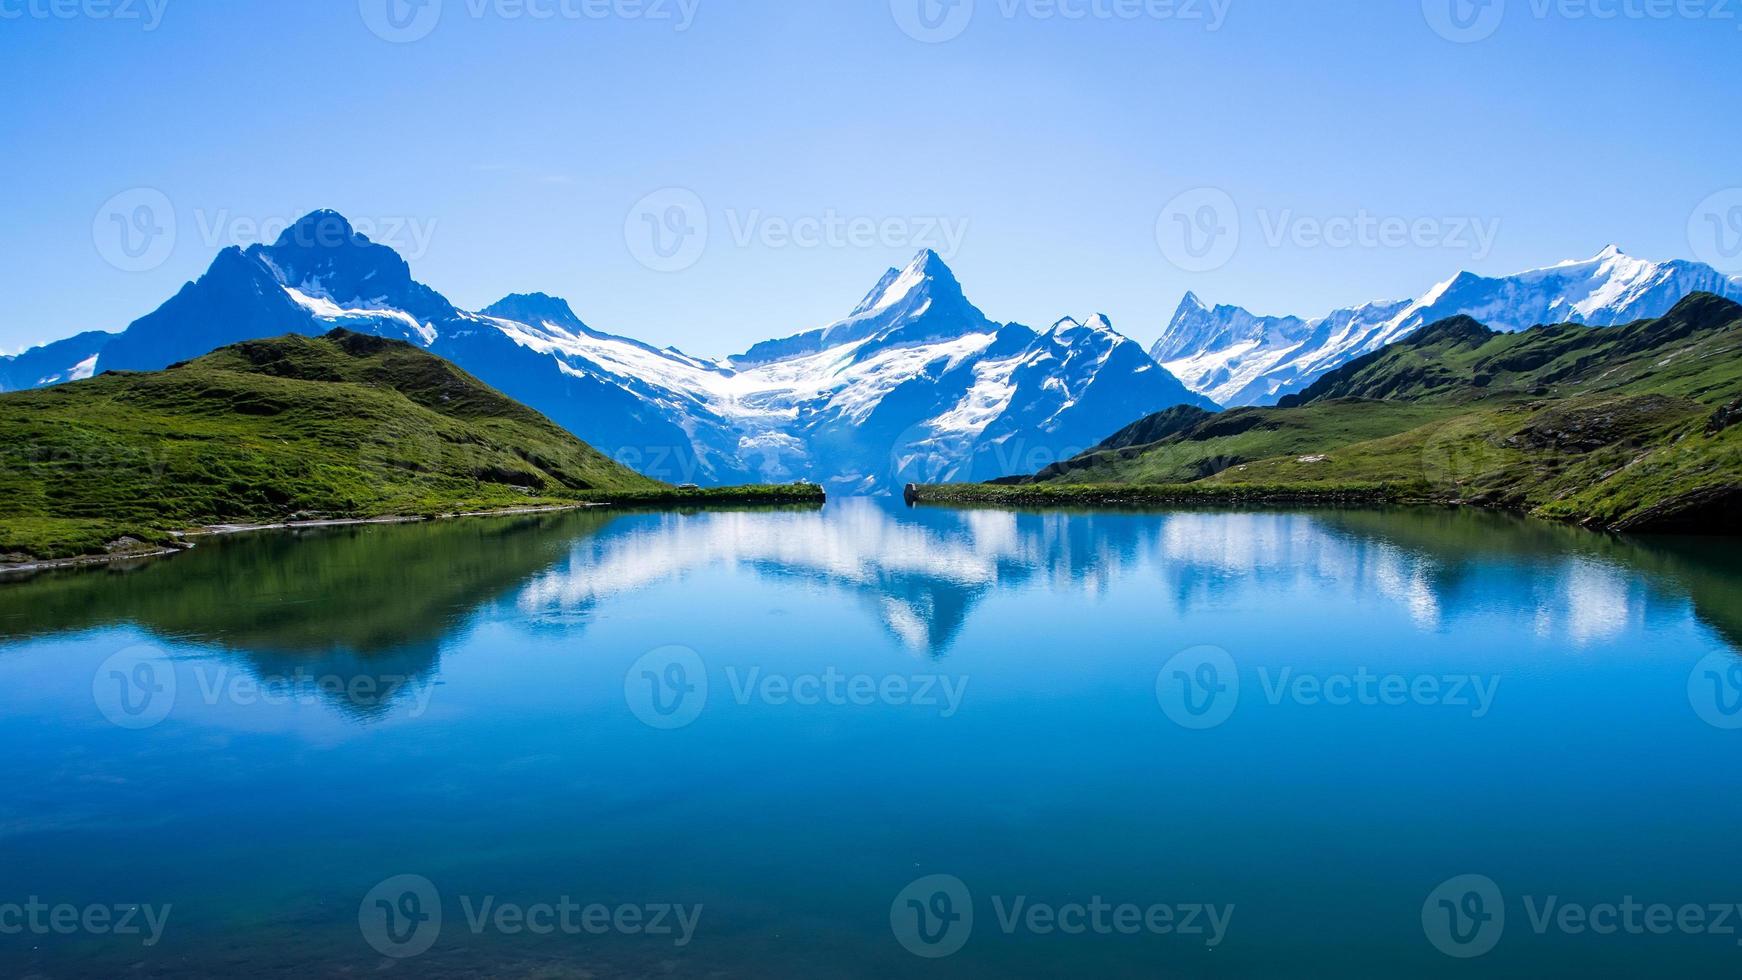 Reflet du célèbre Cervin dans le lac, Suisse photo